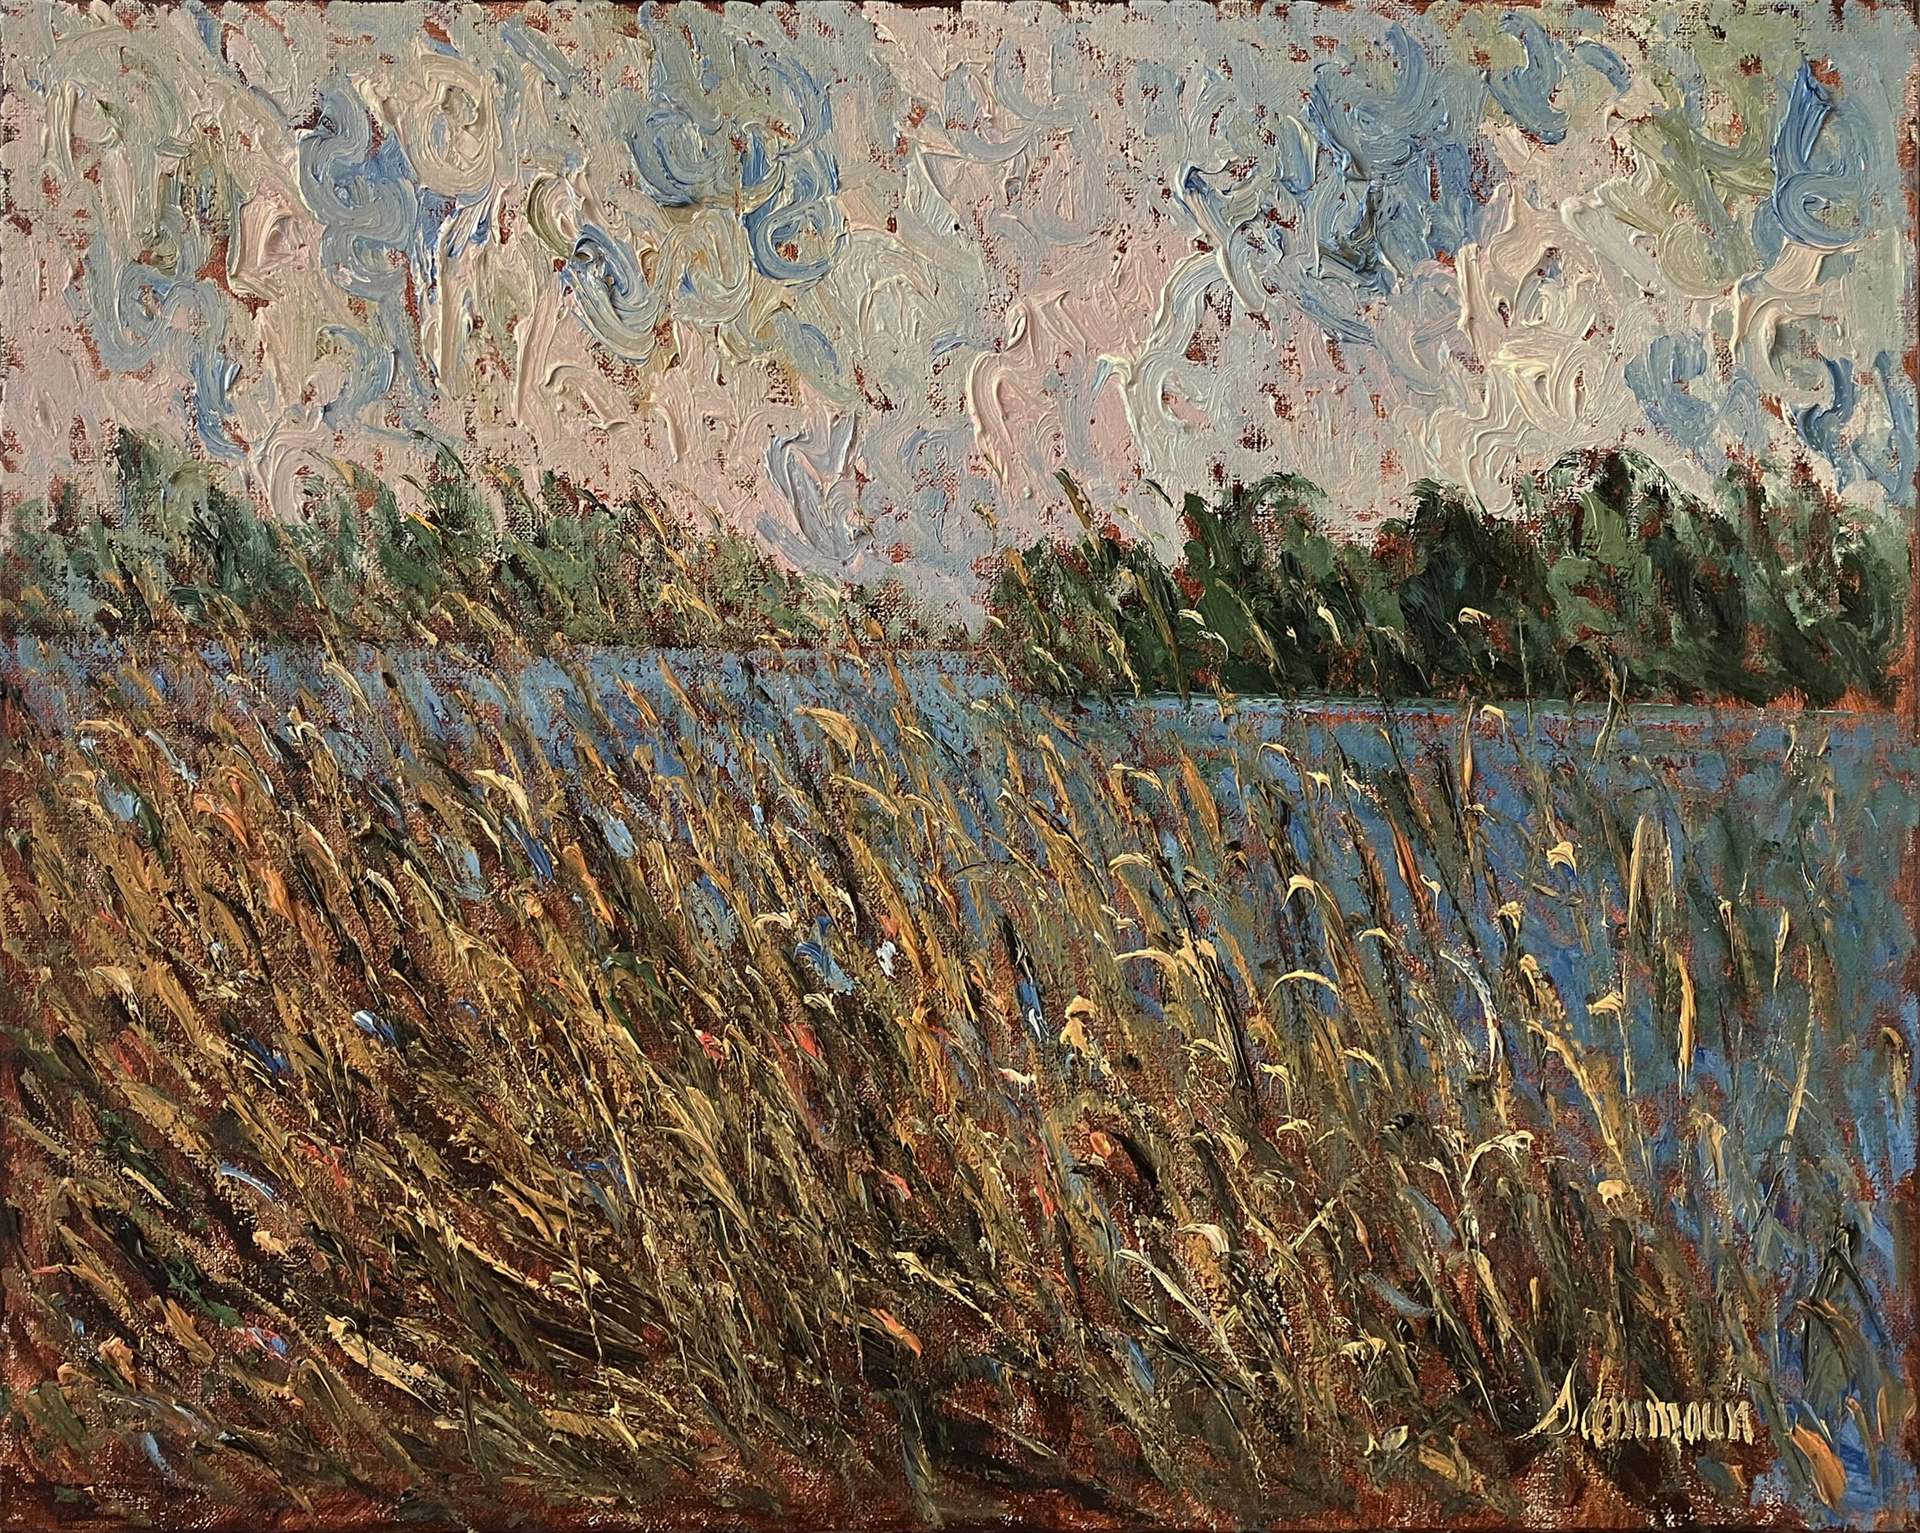 Roseaux, Rivière St-Jacques, La Prairie by Samir Sammoun